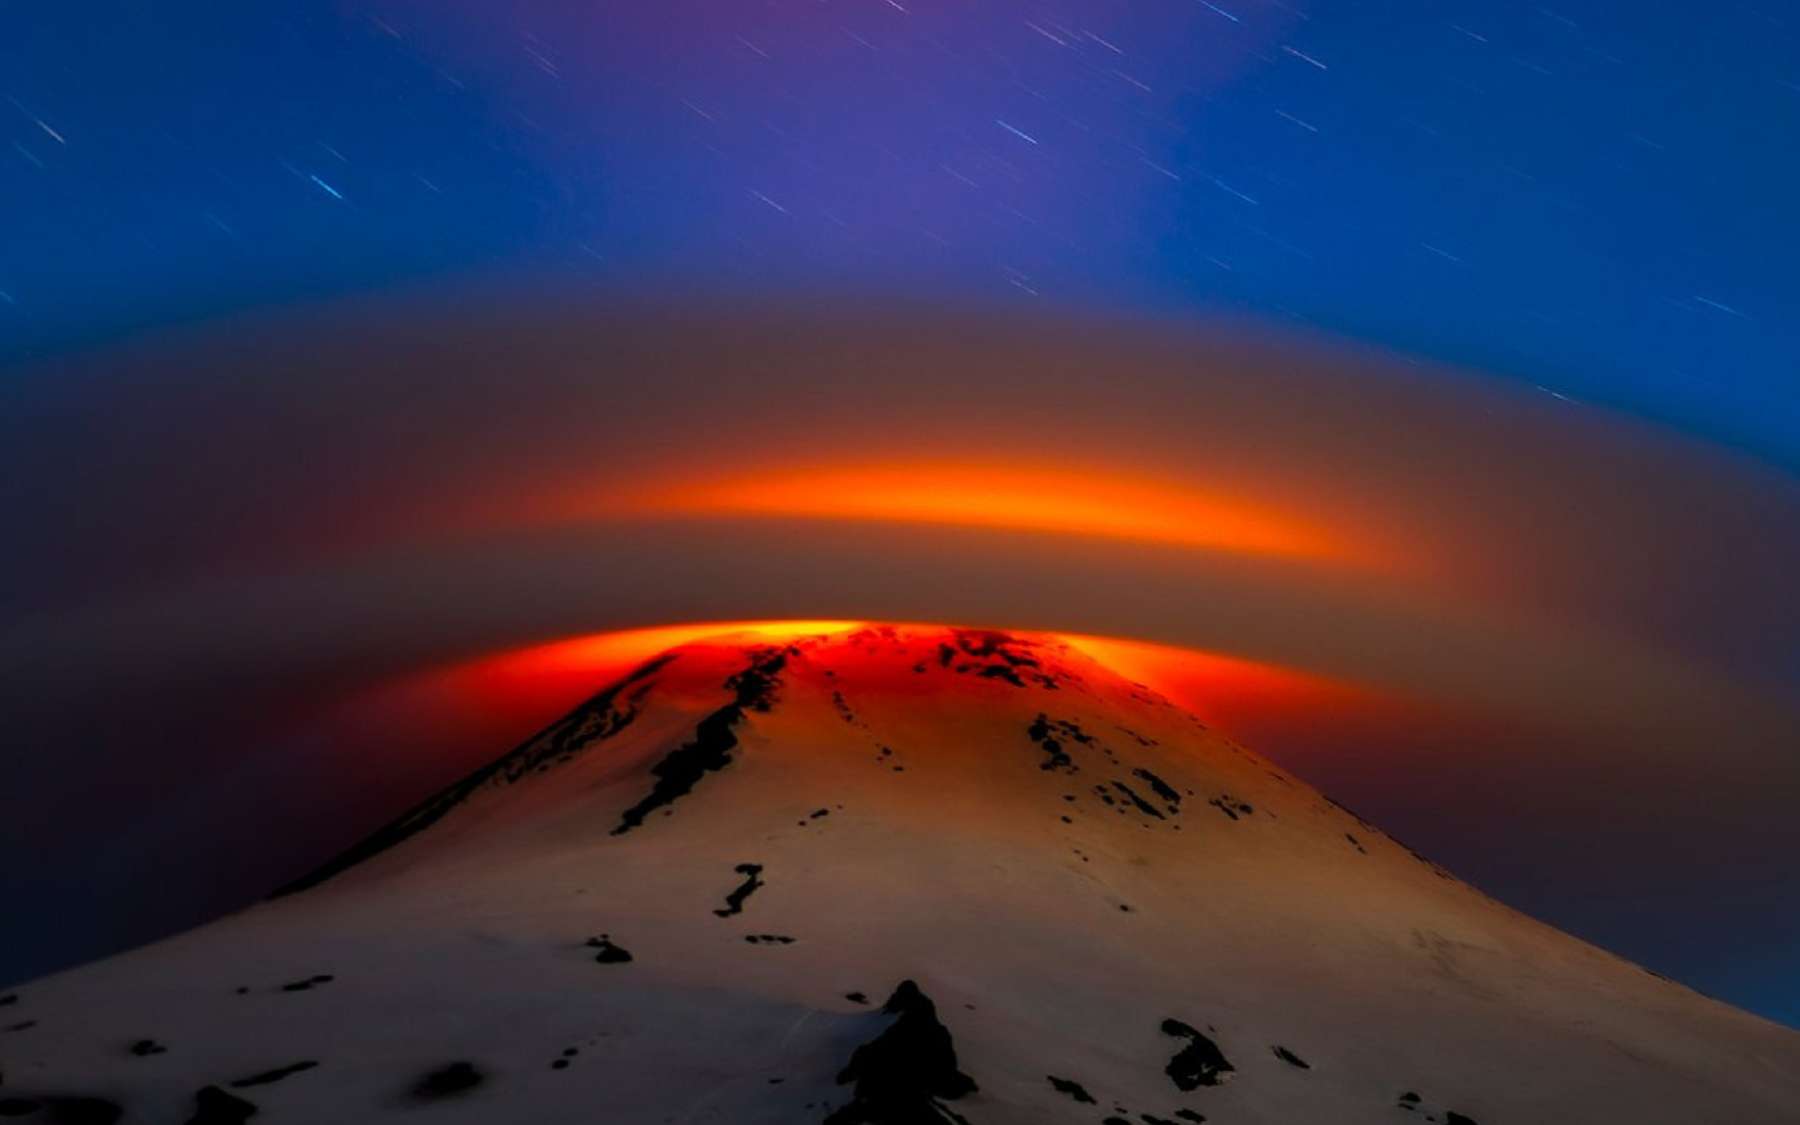 Magnifique : un étonnant nuage lenticulaire au-dessus d'un volcan en activité !